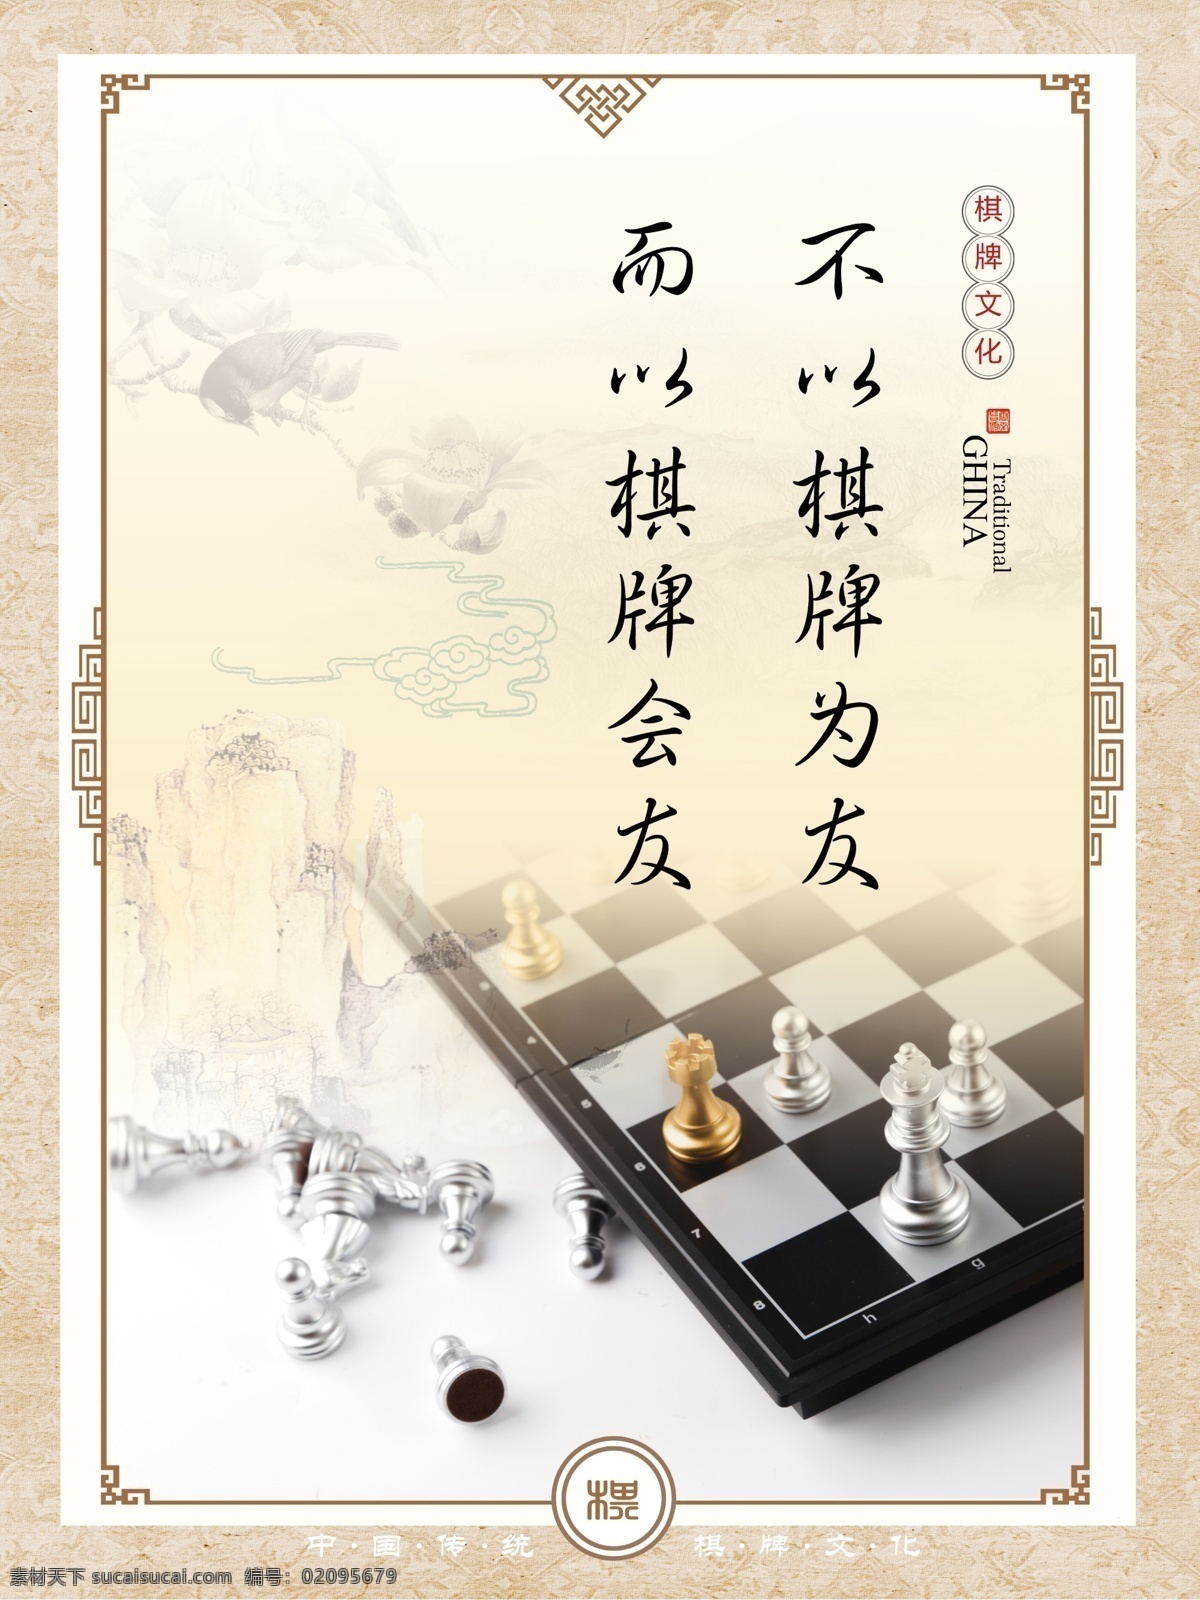 棋牌室文化 棋牌室 棋牌文化 棋牌海报 国际象棋 棋牌标语 海报专区